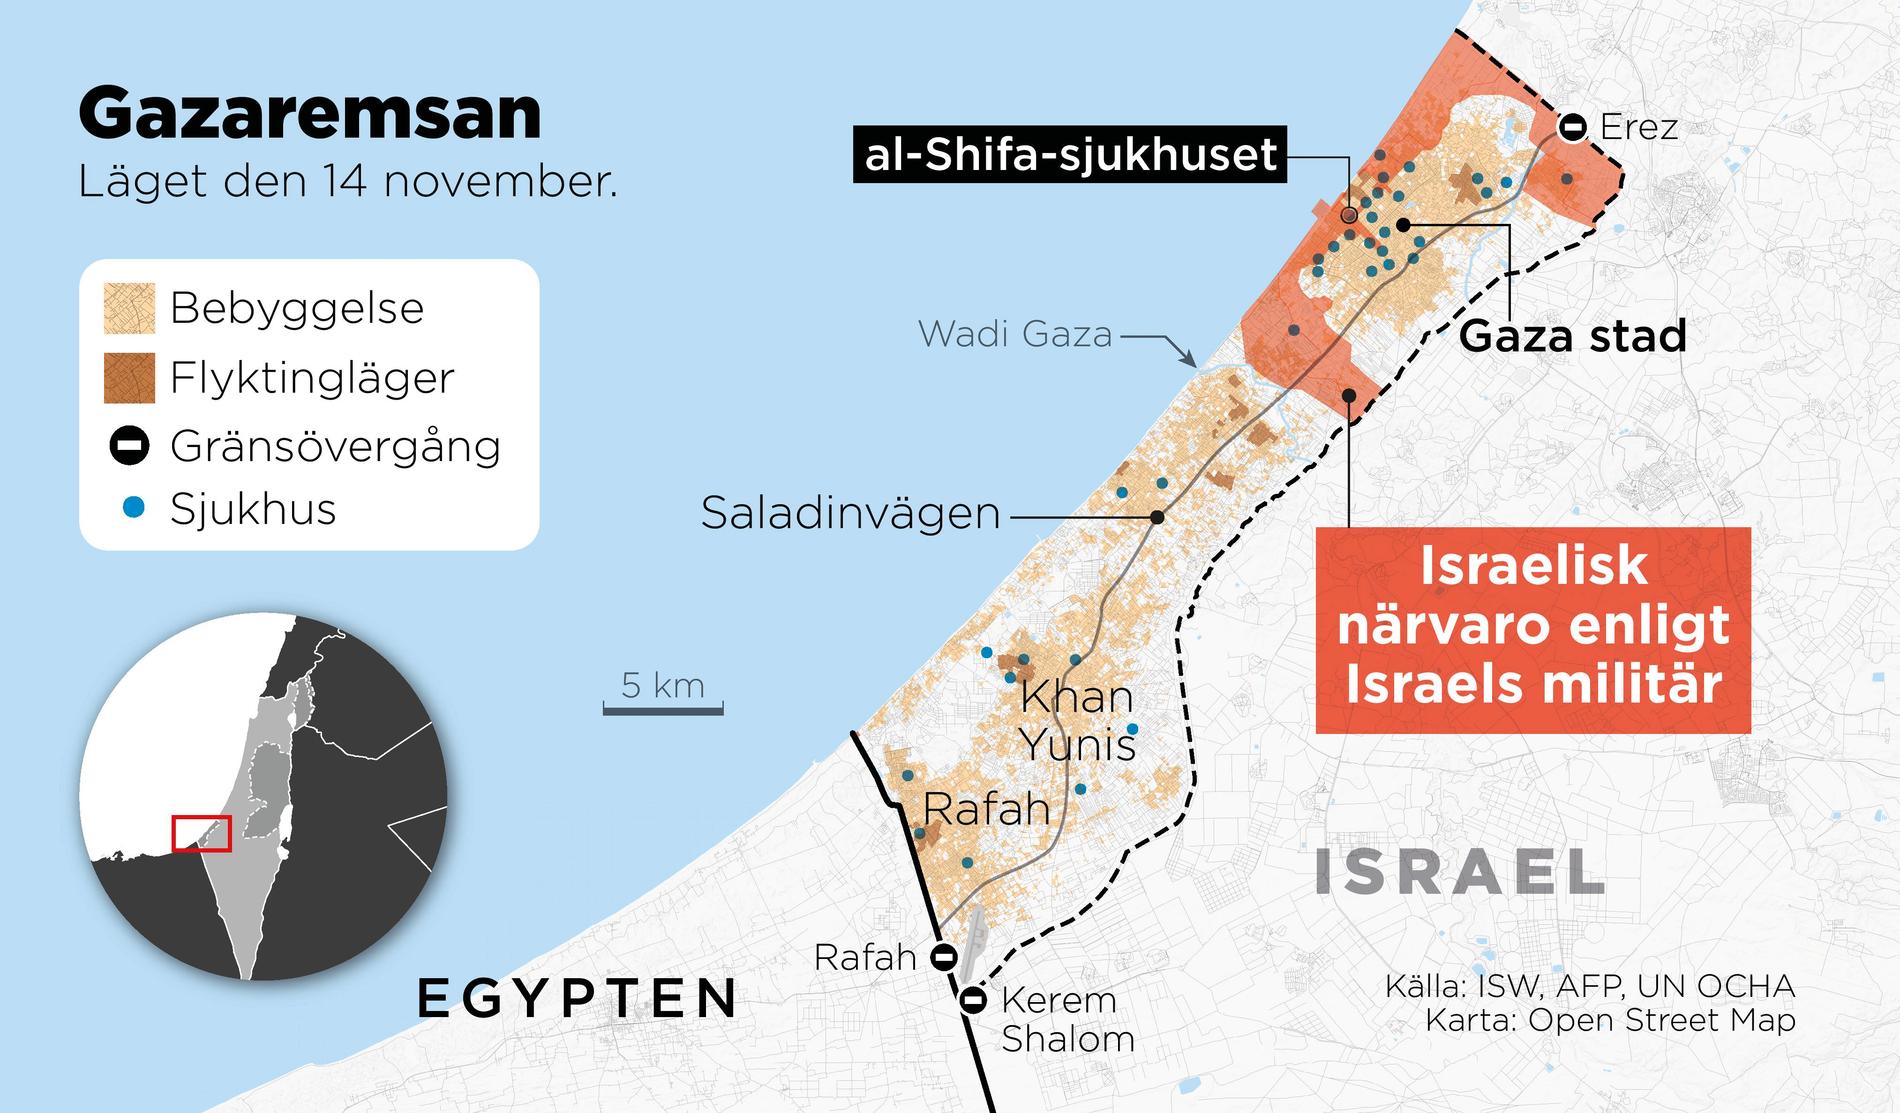 Kartan visar den omringning av Gaza stad som den israeliska militären påstår sig ha genomfört.